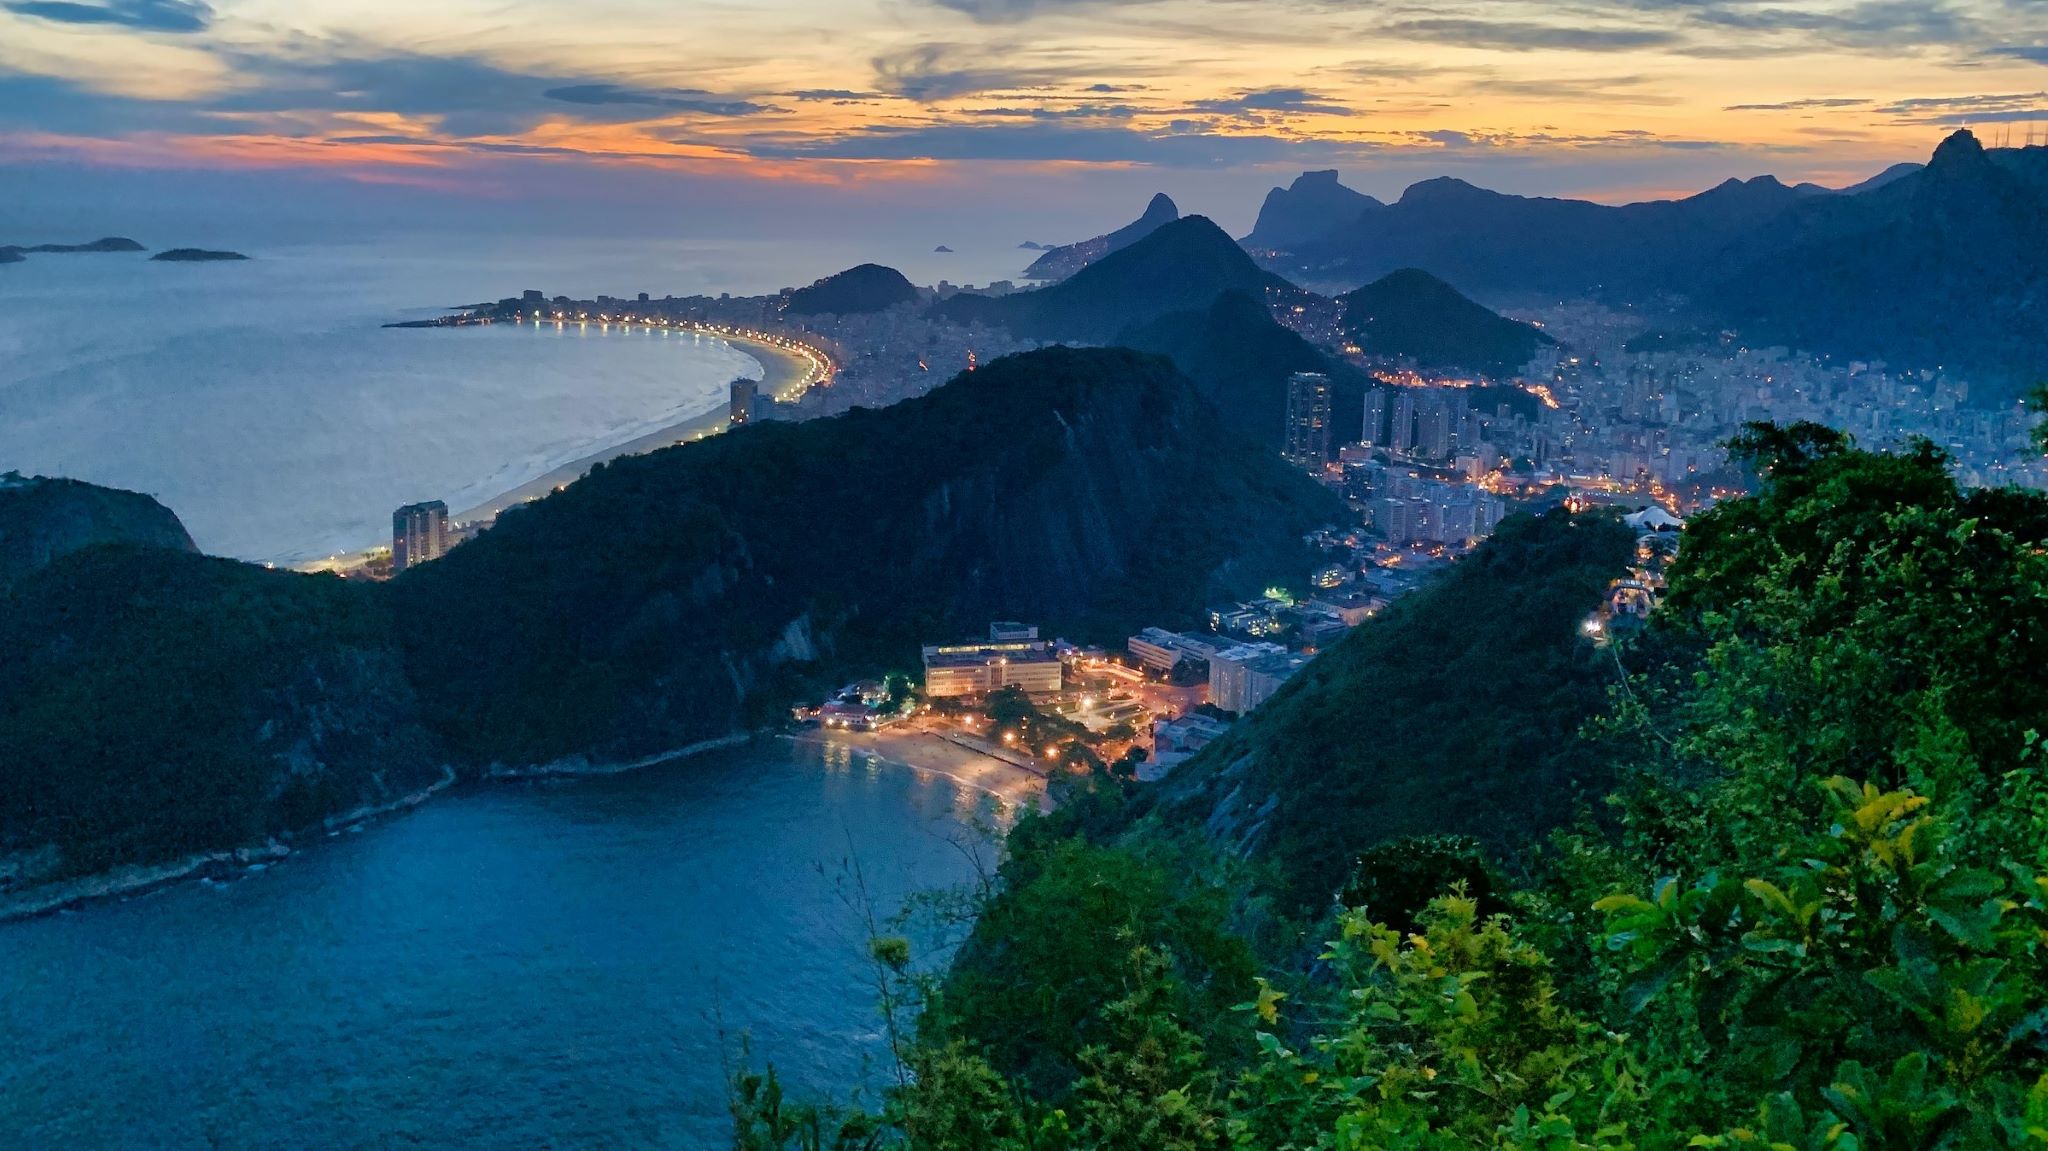 A landscape view of Rio de Janeiro